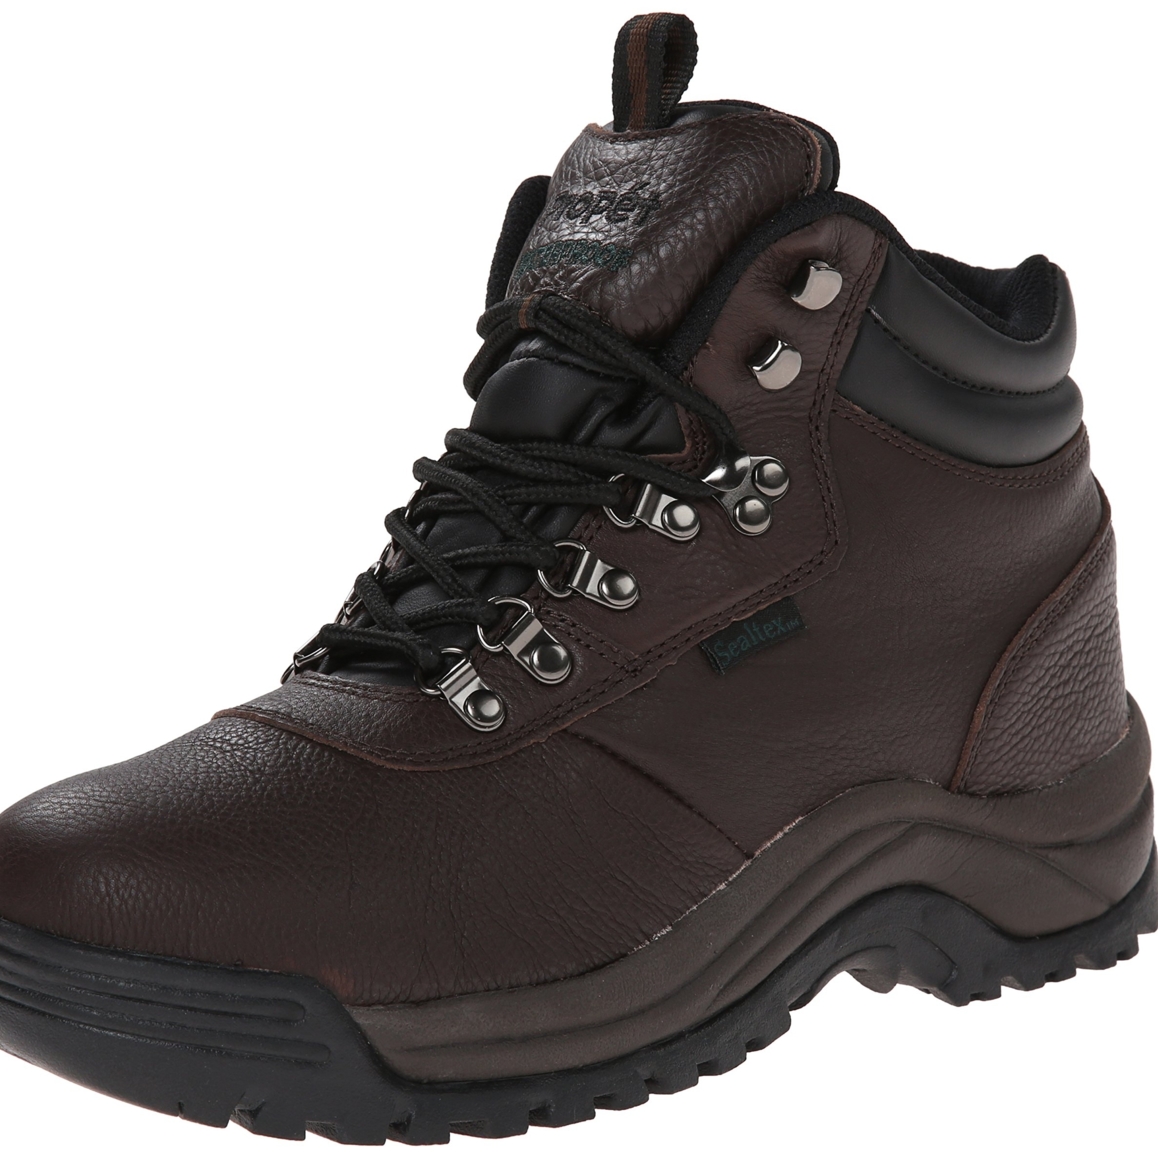 Propet Men's Cliff Walker Hiking Boot Bronco Brown - M3188BRO - BRONCO BROWN, 8.5-D